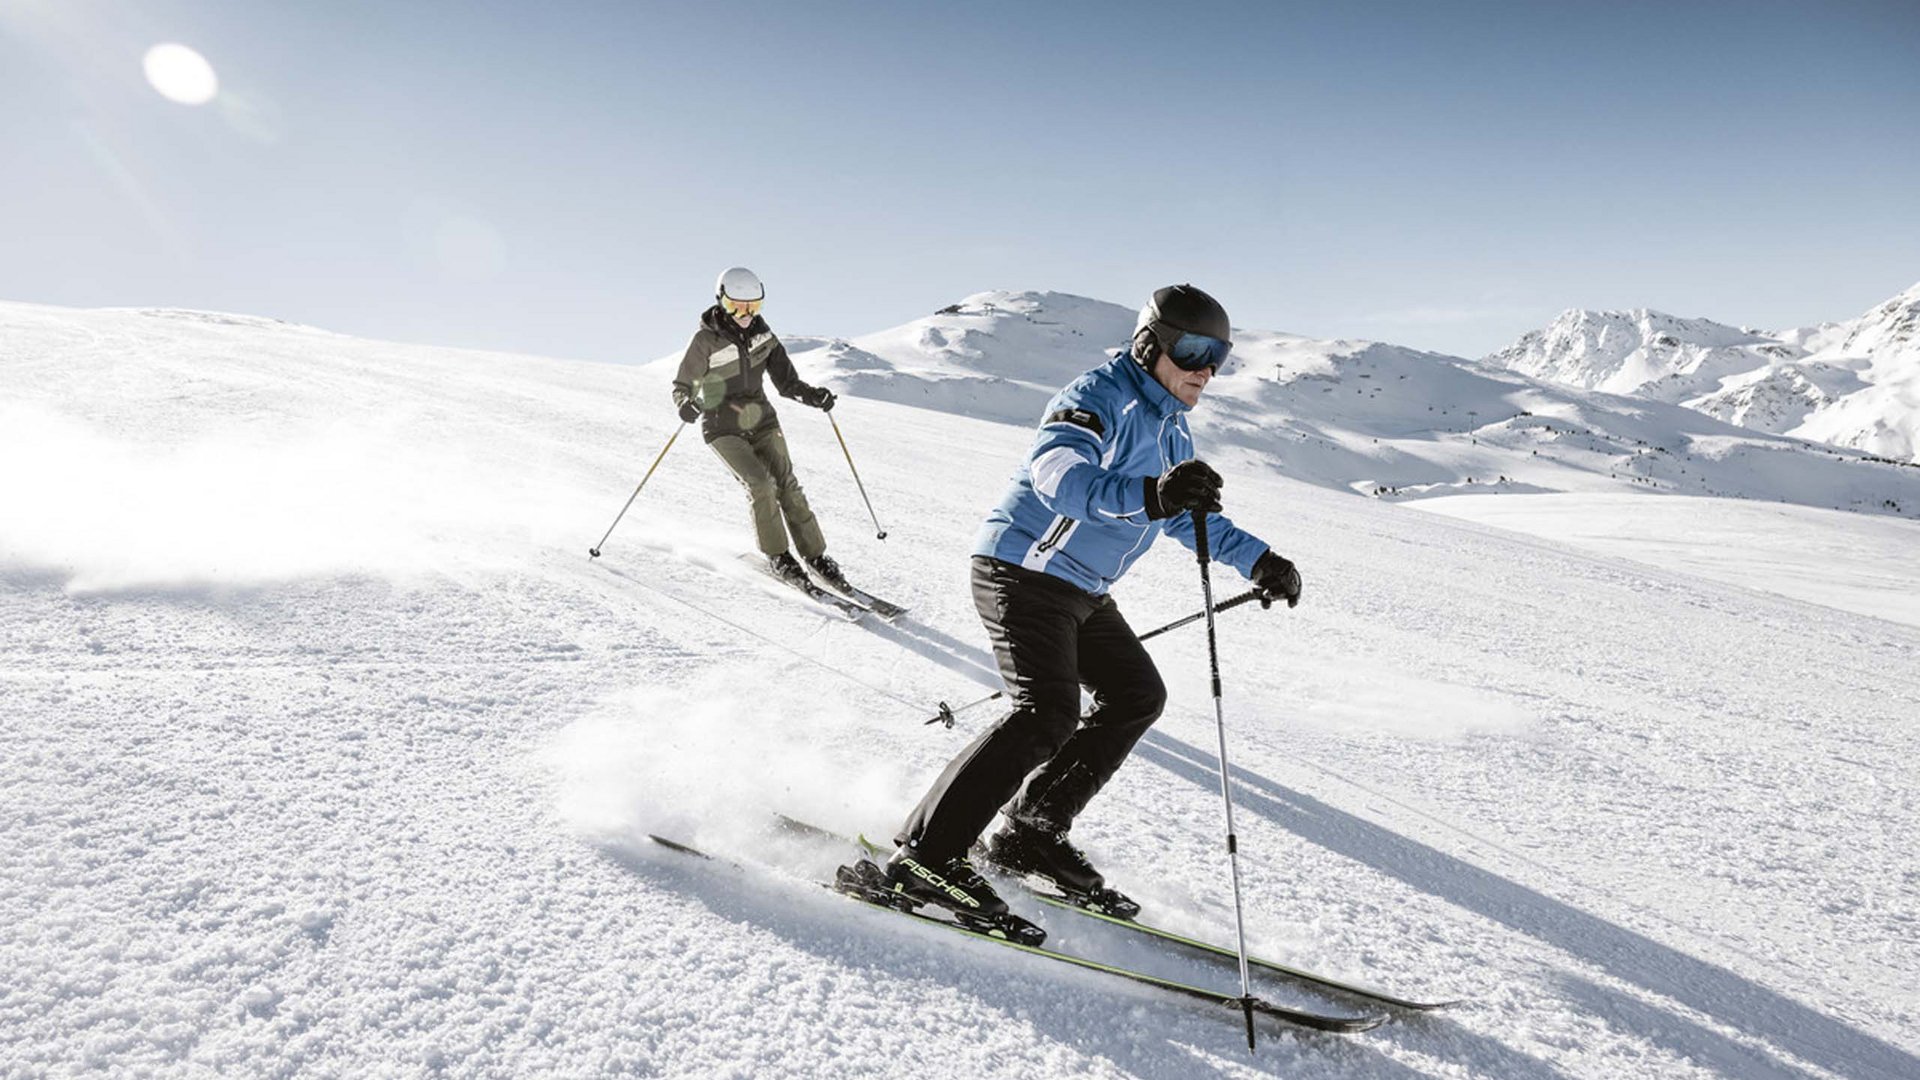 Tyrol ski areas